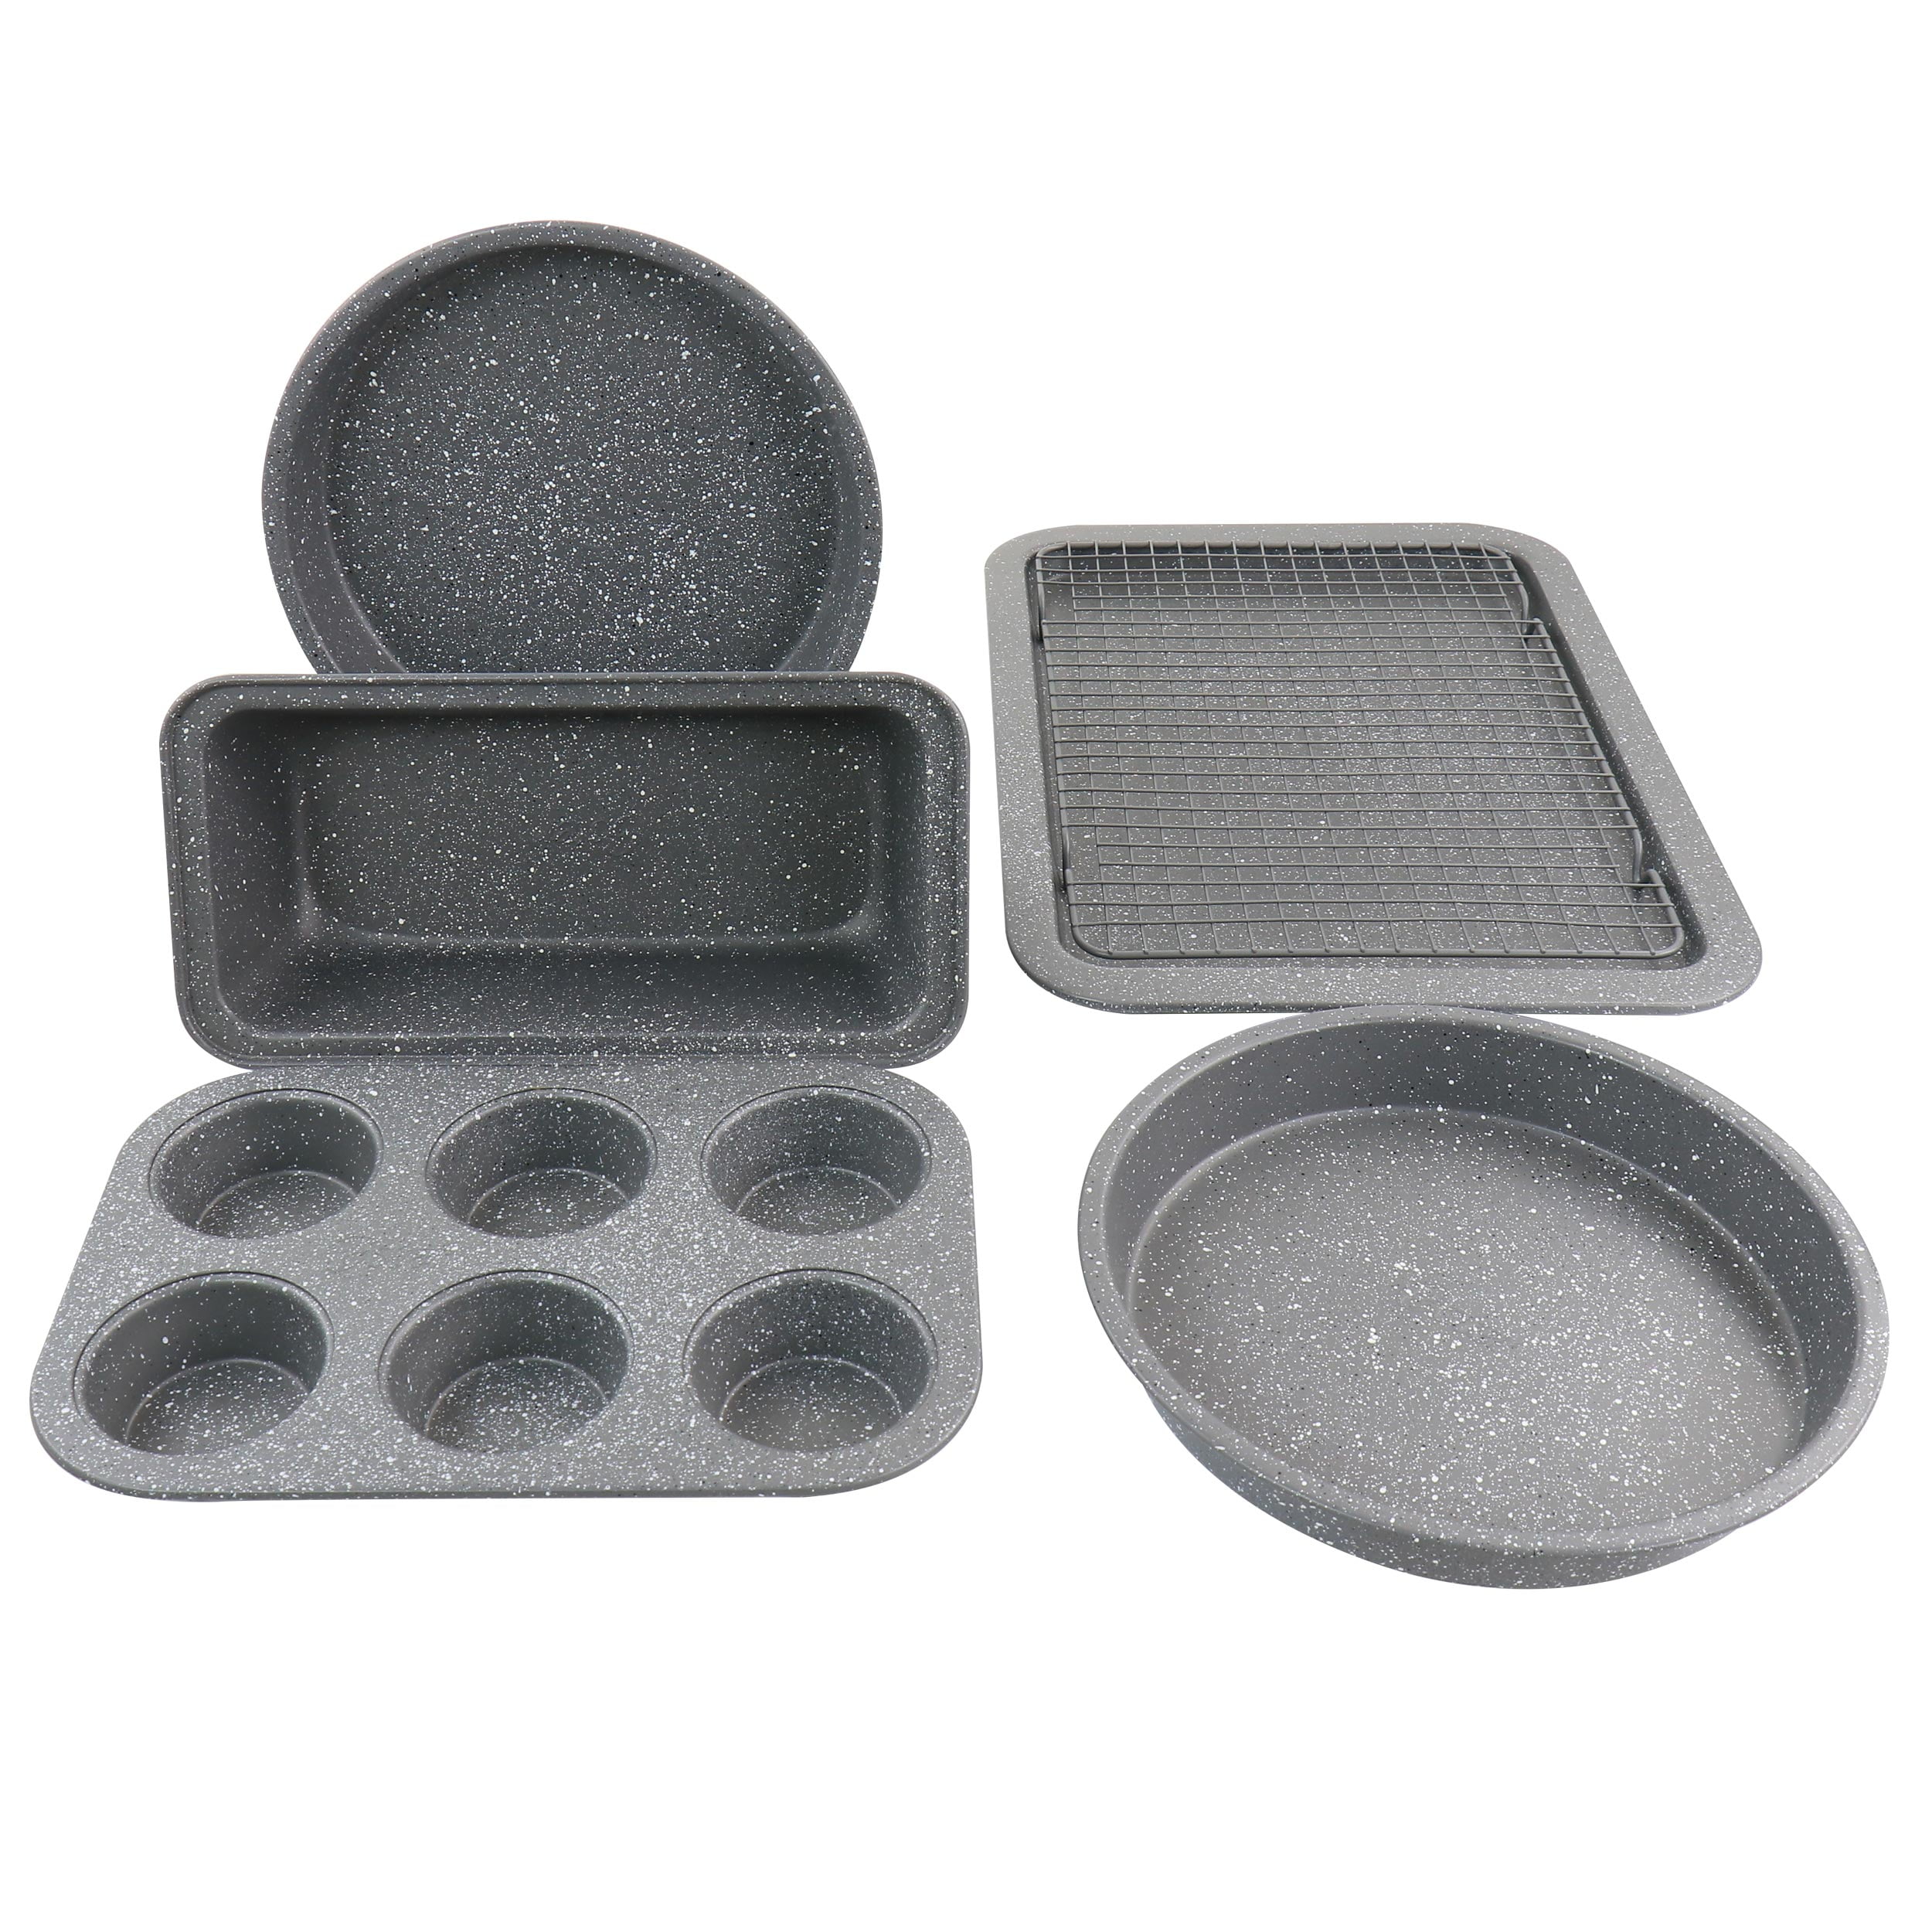 Kalorik Stainless Steel 2-Piece Steel Bakeware Set in the Bakeware